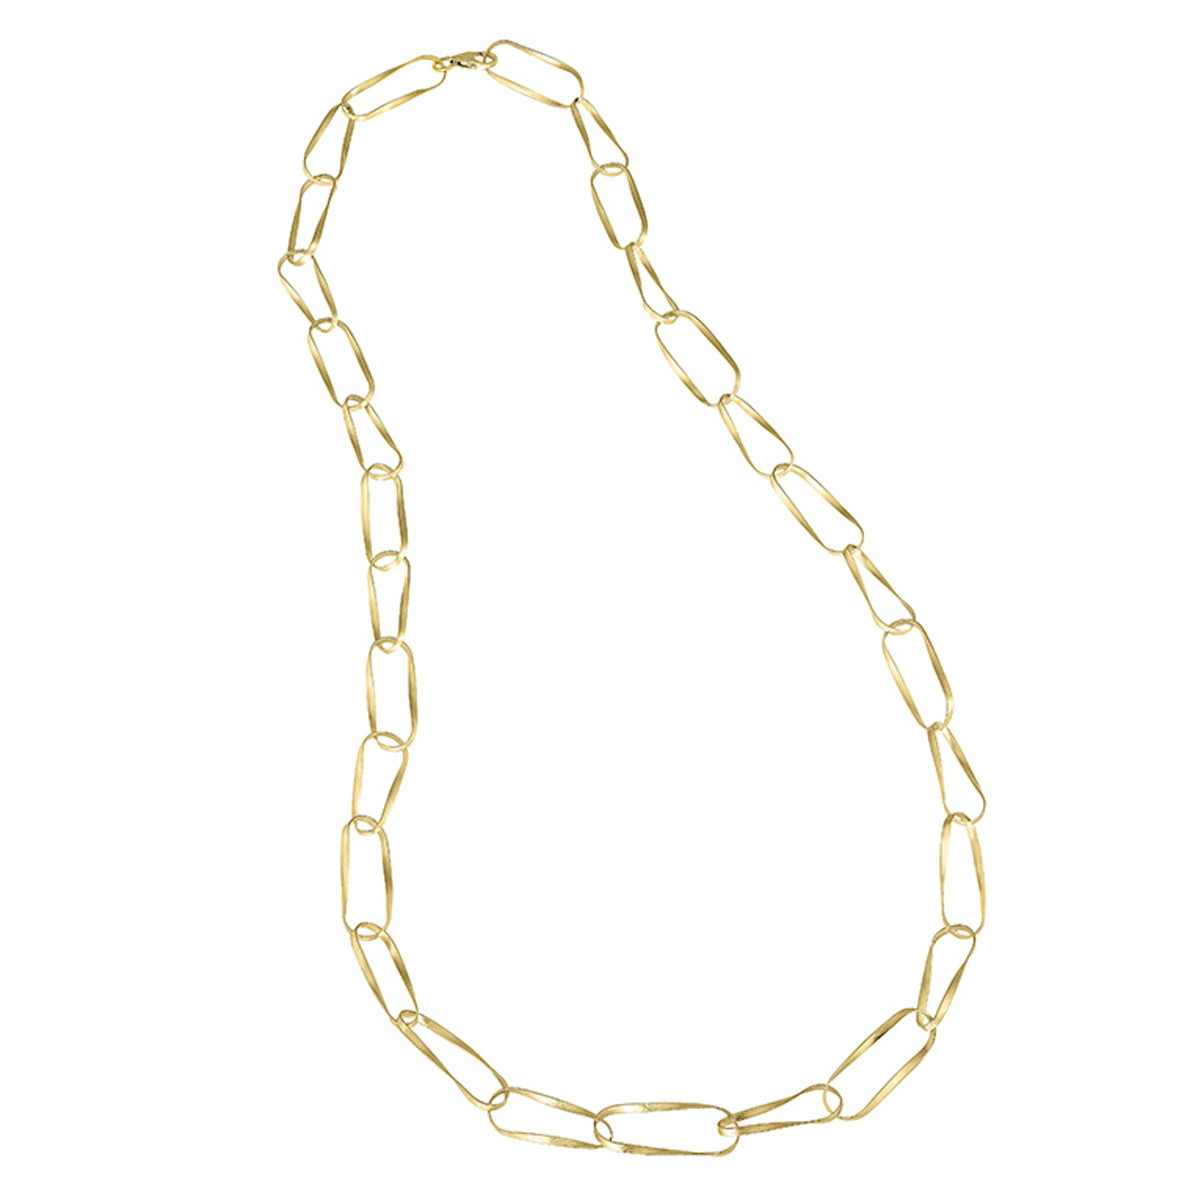 Twist Necklace in Silver. 18k Gold Vermeil